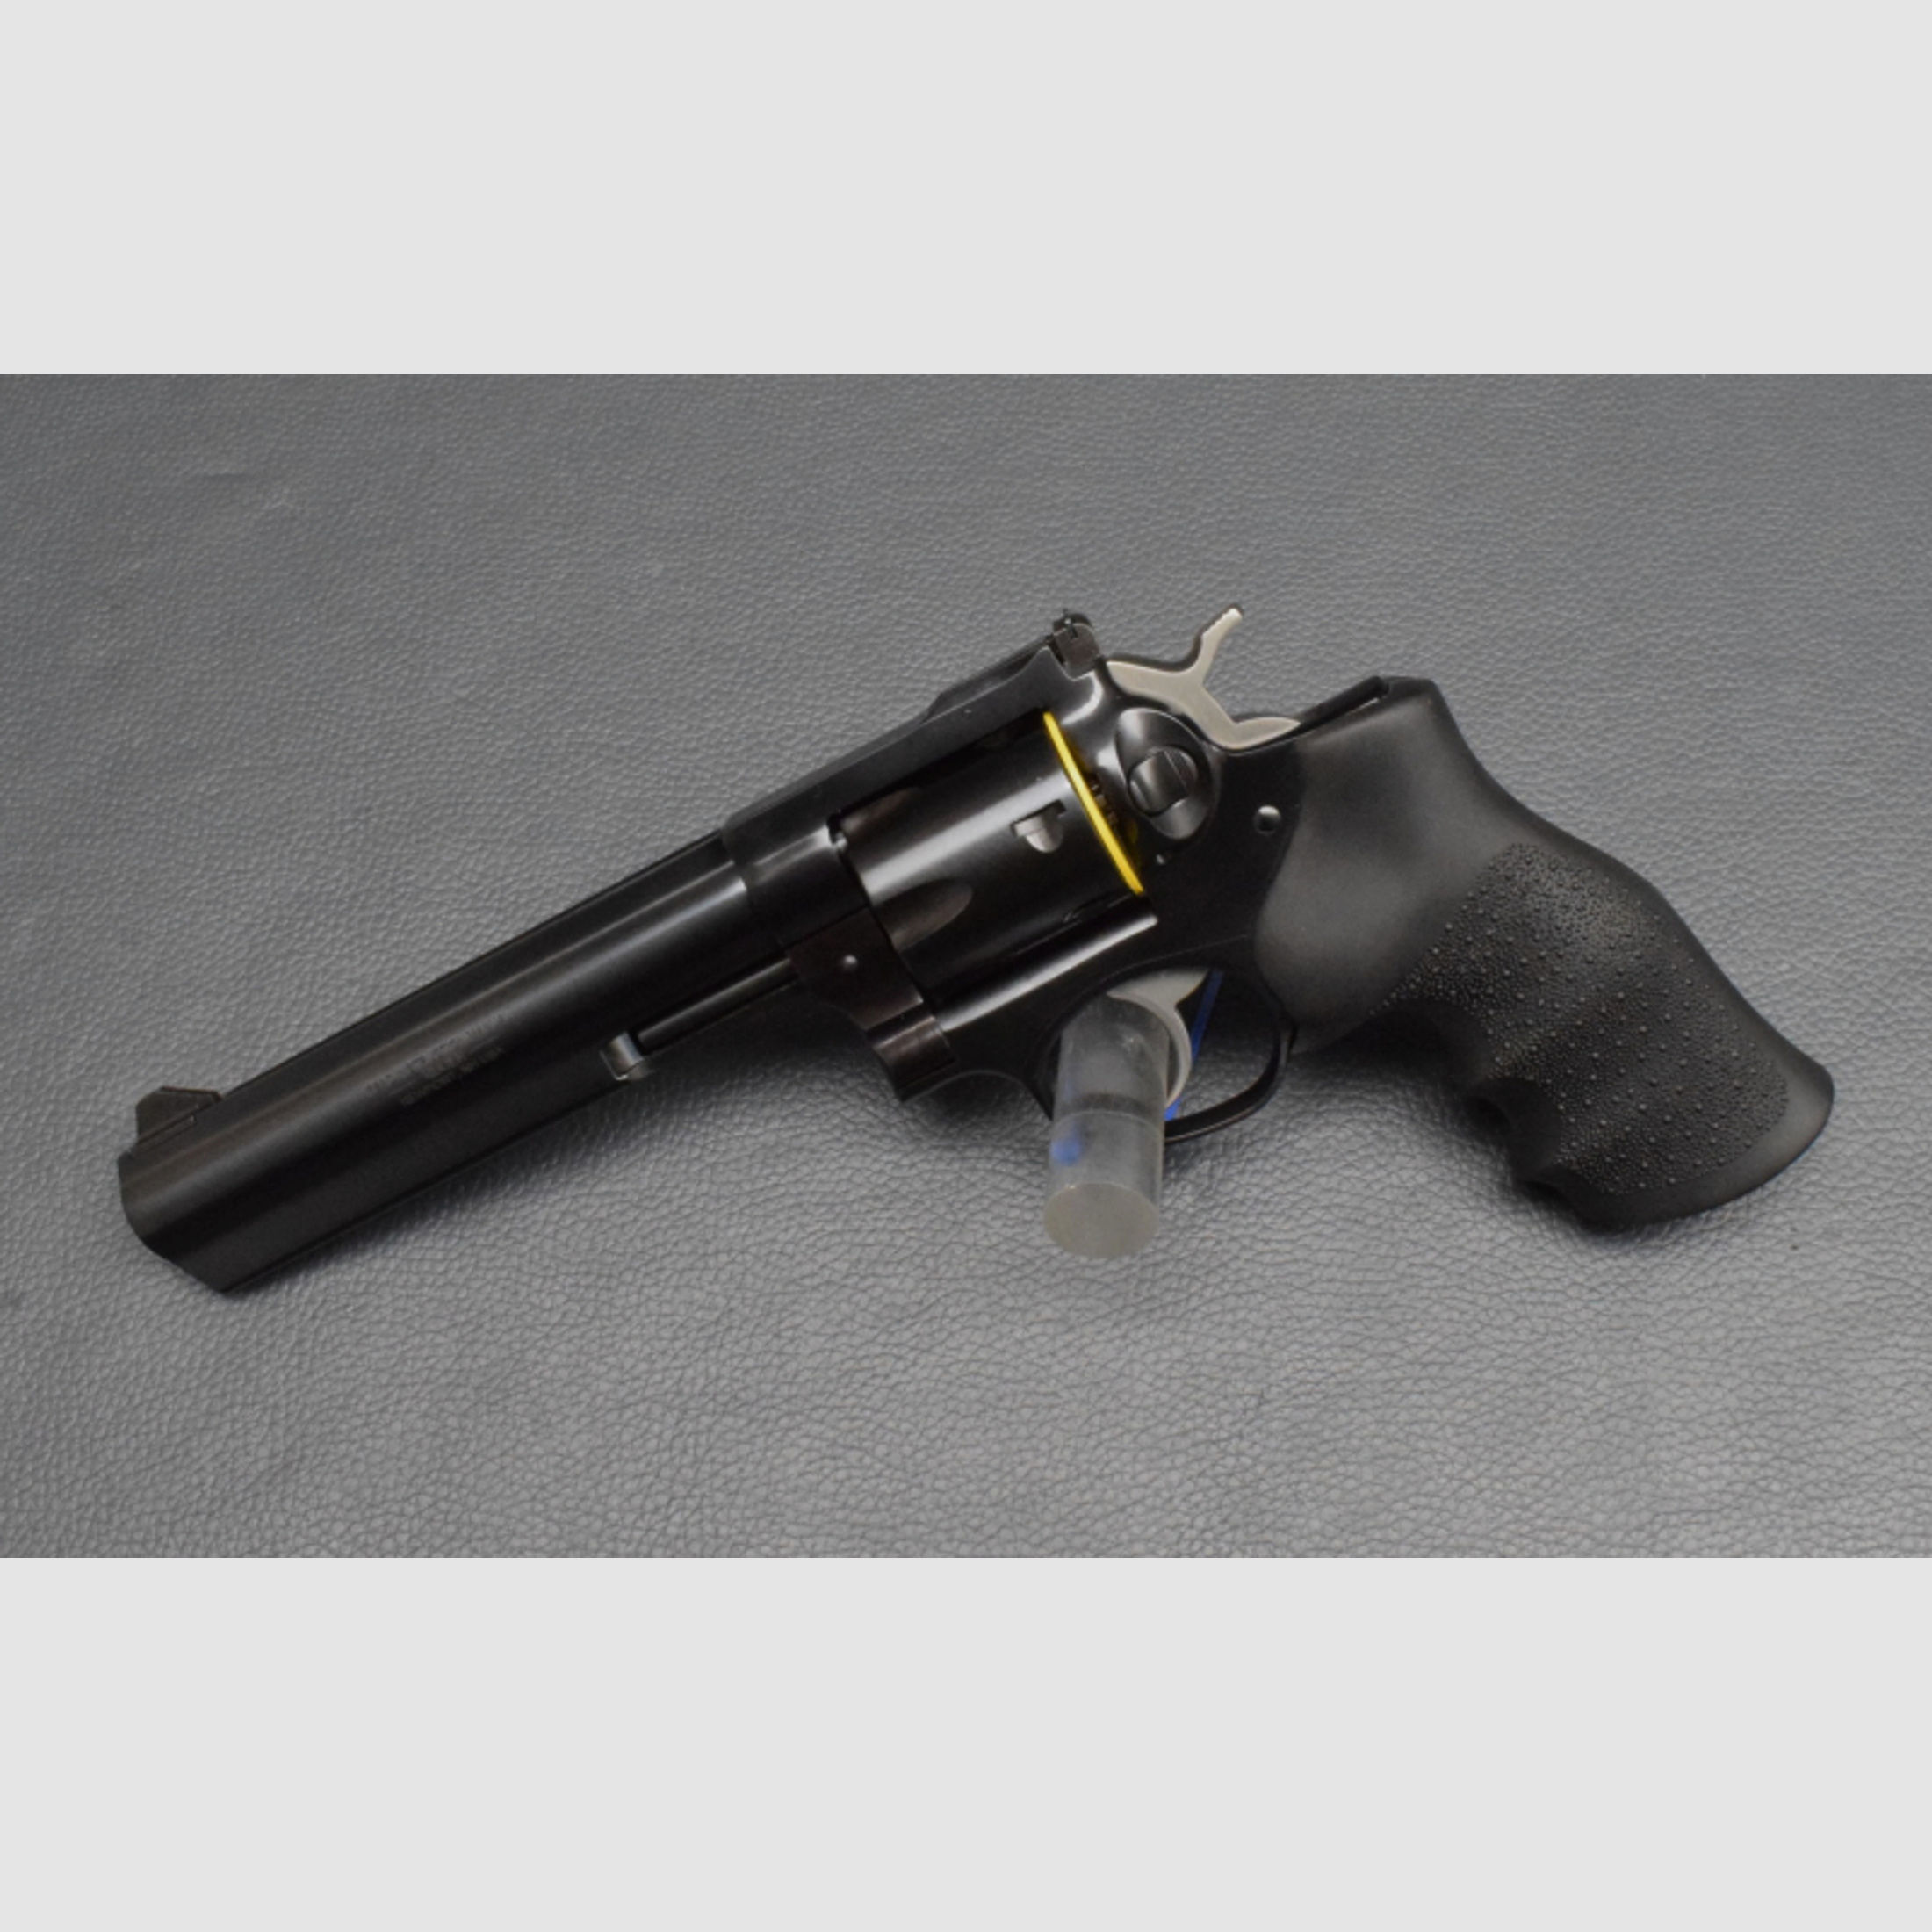 Ruger GP100 6 Brüniert, Kaliber 357 Magnum, 6-Schuss, Neuware